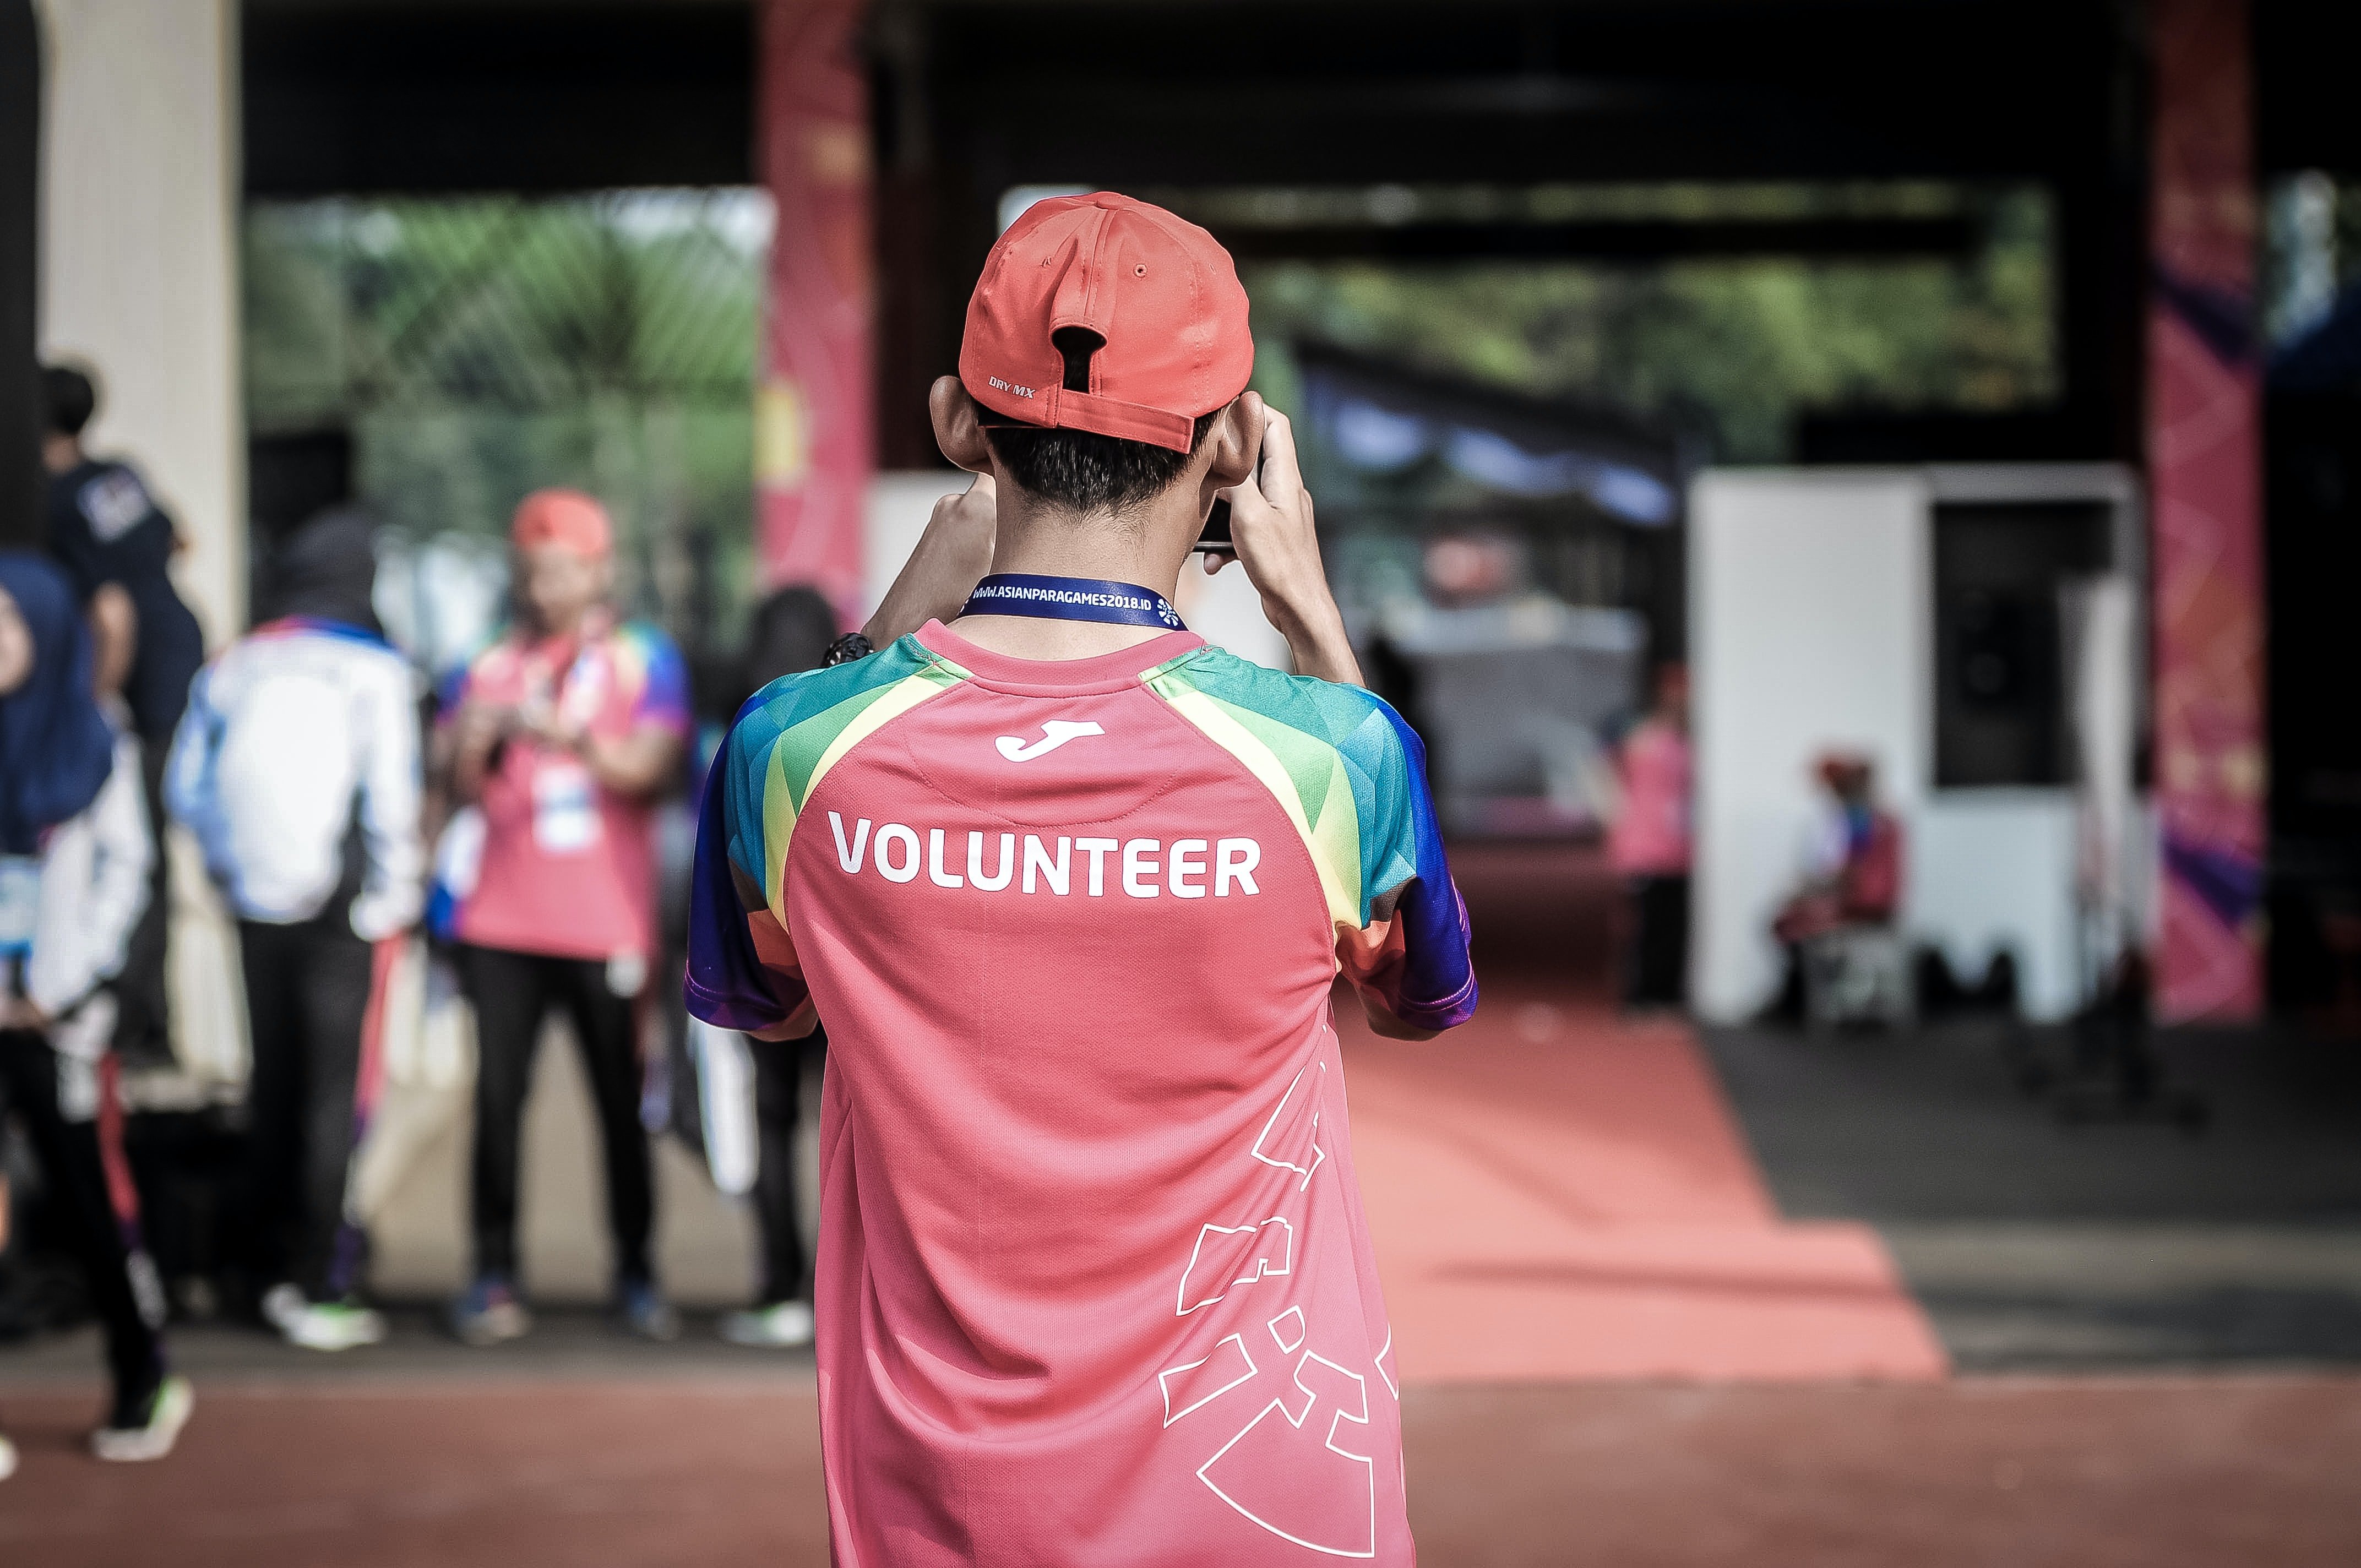 Tenies pensat fer un voluntariat aquest estiu? T’expliquem la situació